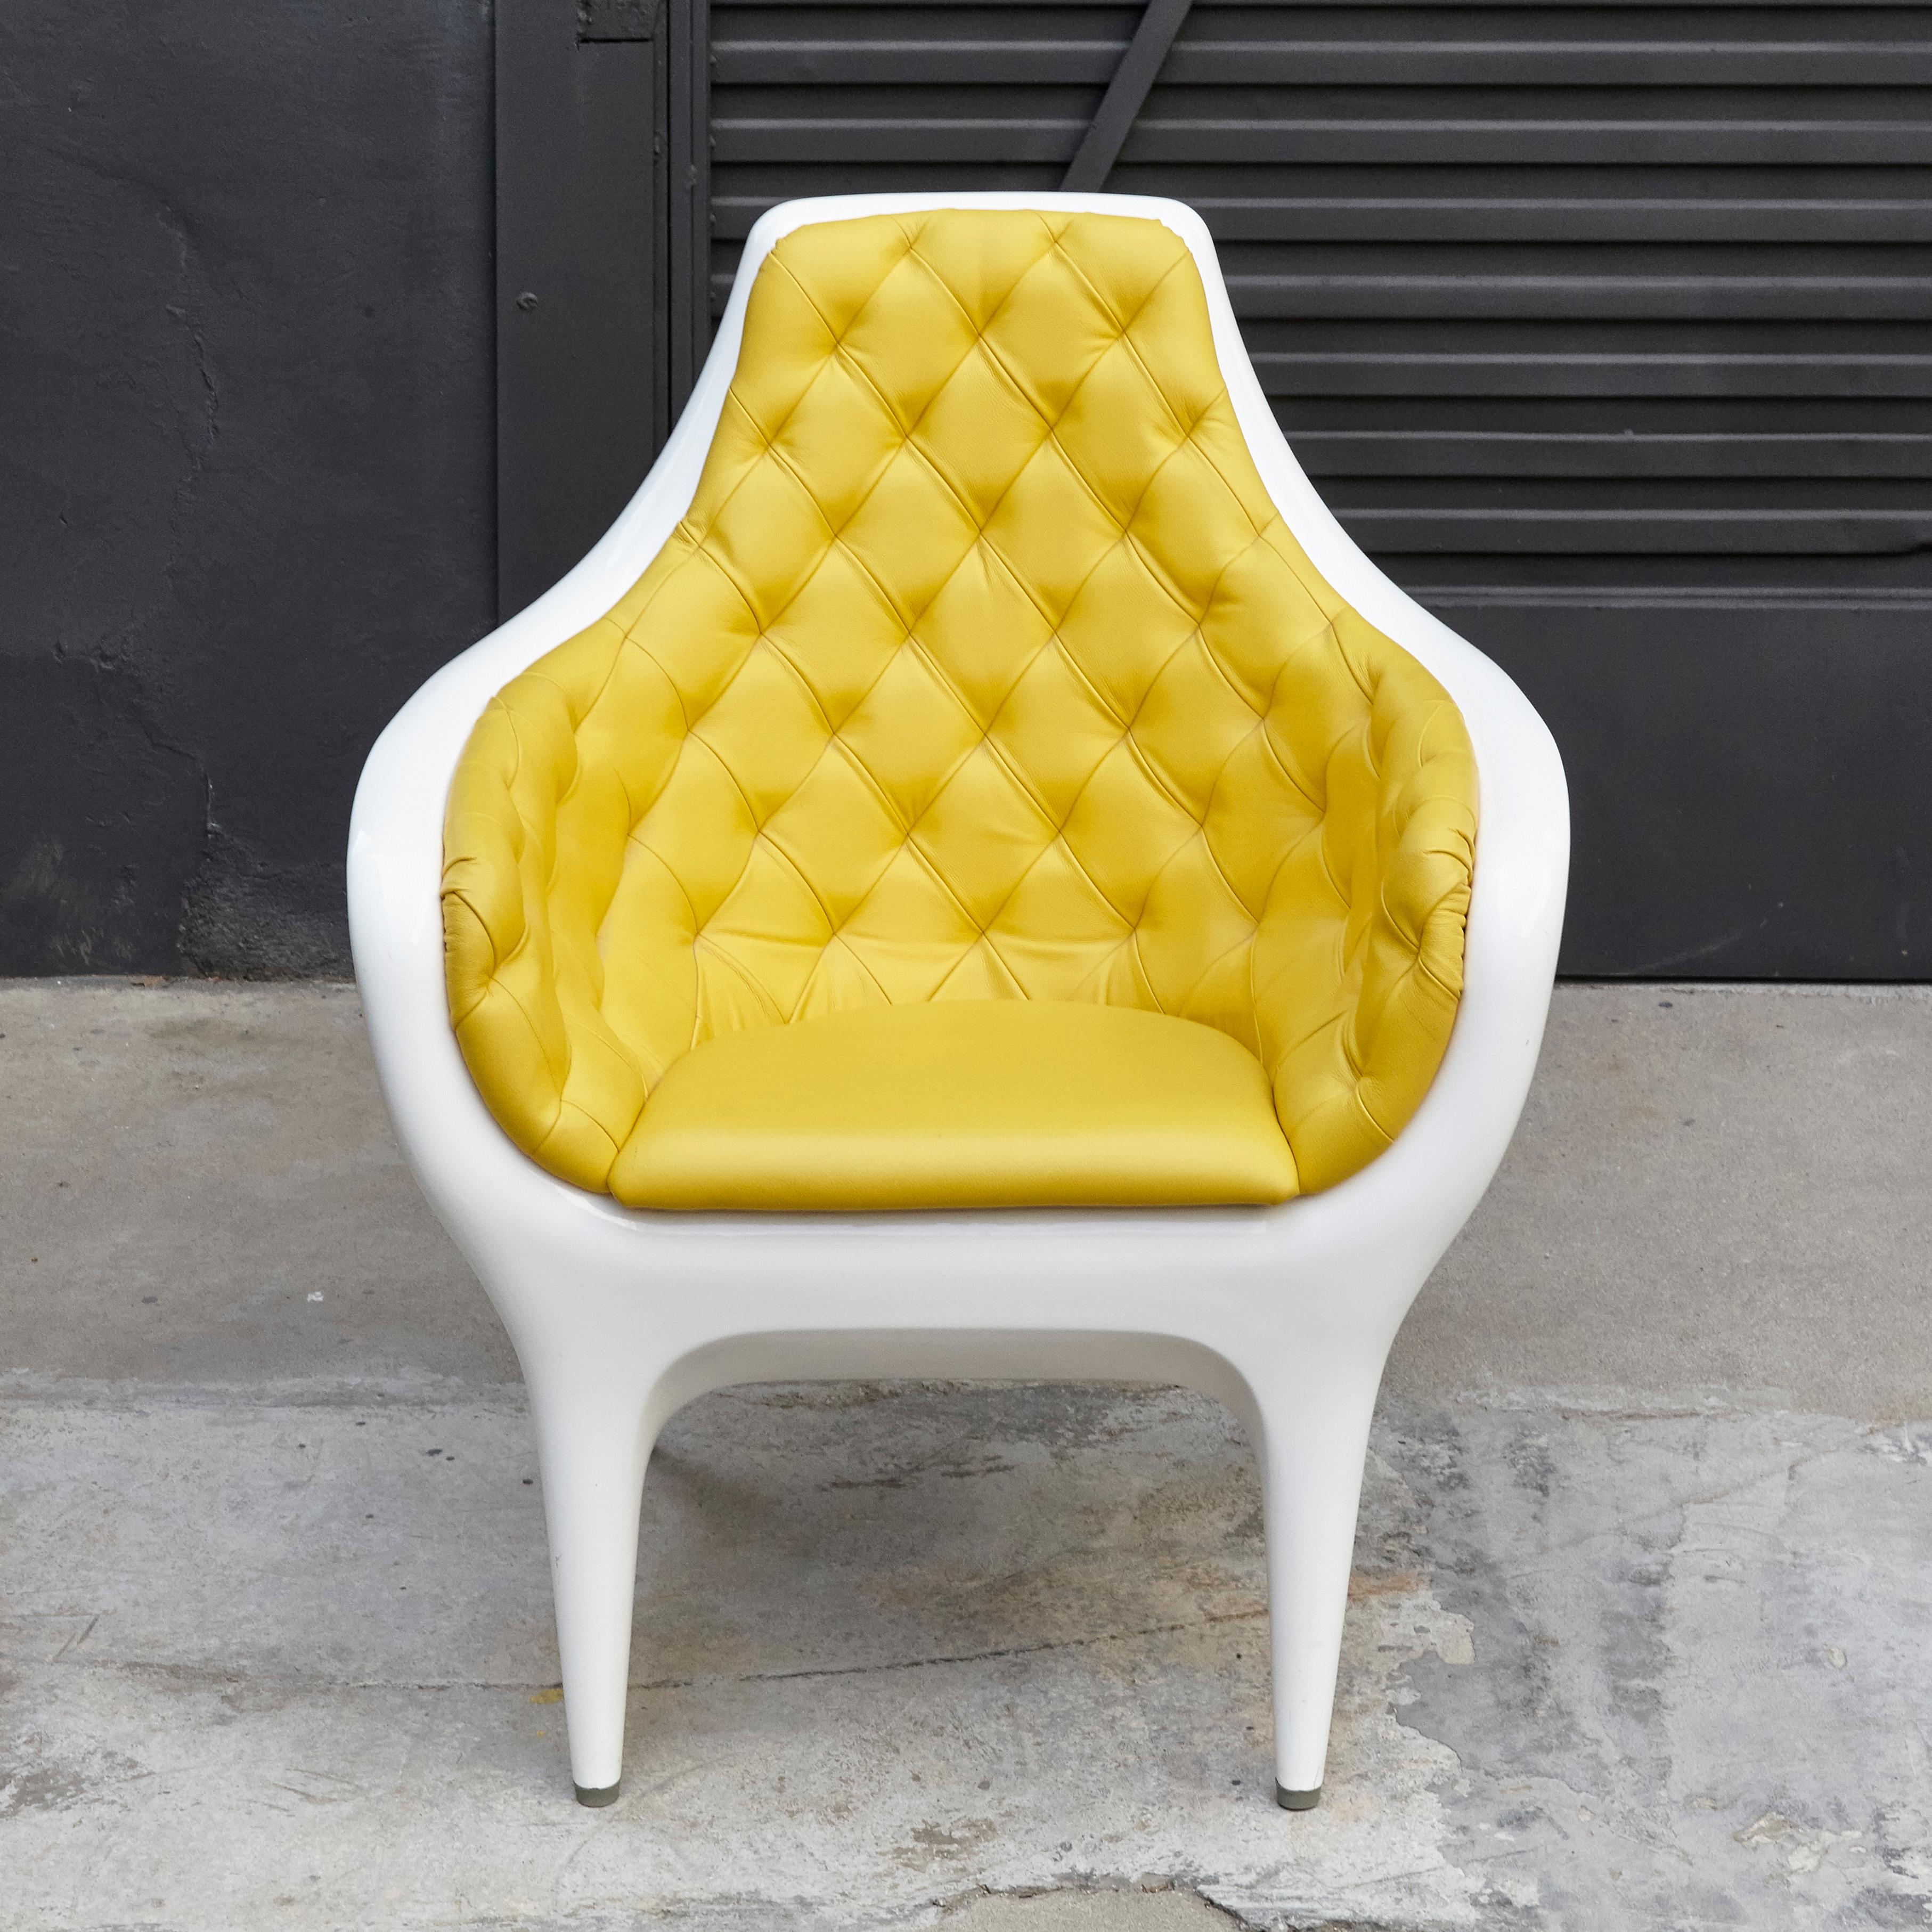 Sessel entworfen von Jaime Hayon hergestellt von BD

Struktur aus hochglanzlackiertem, rotationsgeformtem Polyethylen. Gepolstert in Leder Beschriftung.

Hat einige Verschleiß im Einklang von Alter und Nutzung.